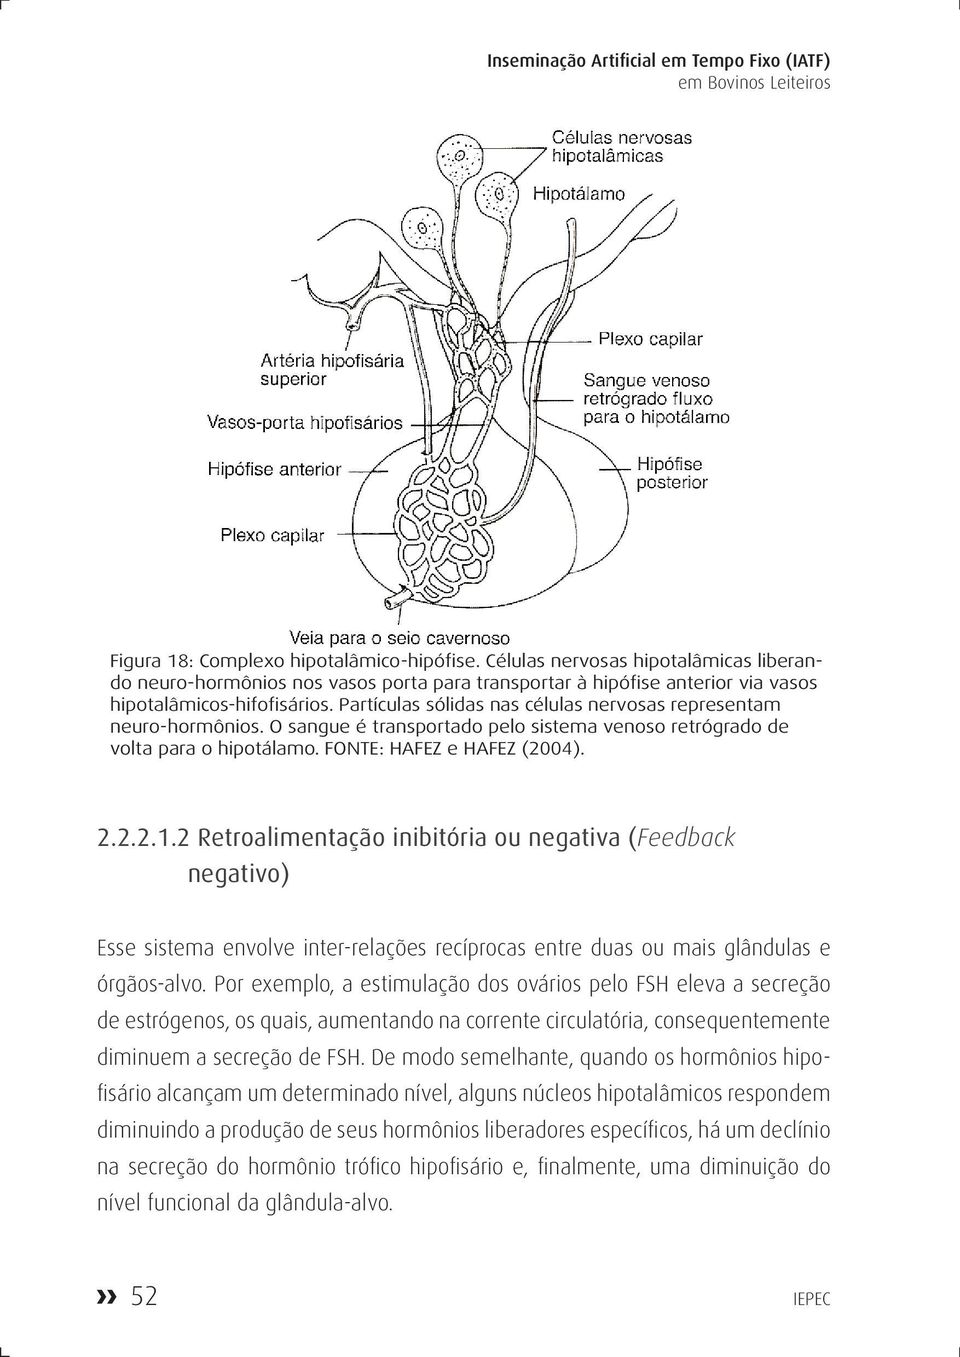 Partículas sólidas nas células nervosas representam neuro-hormônios. O sangue é transportado pelo sistema venoso retrógrado de volta para o hipotálamo. FONTE: HAFEZ e HAFEZ (2004). 2.2.2.1.